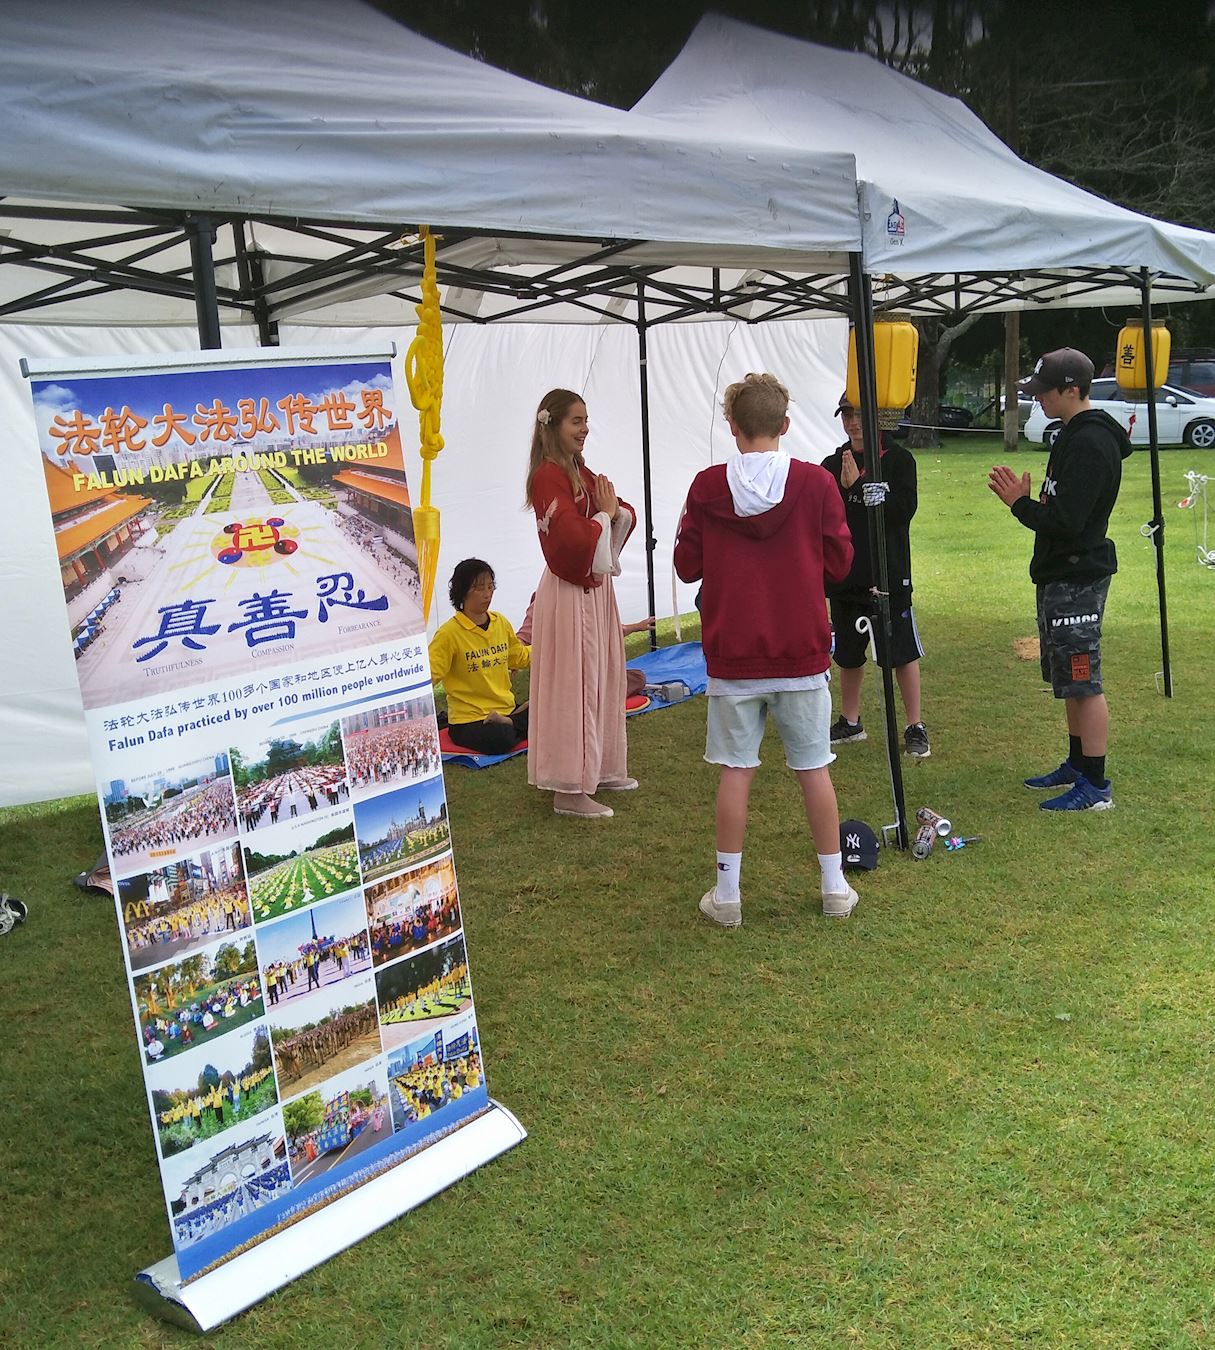 Image for article Les pratiquants de Falun Gong accueillis à la foire de Kumeu en Nouvelle-Zélande